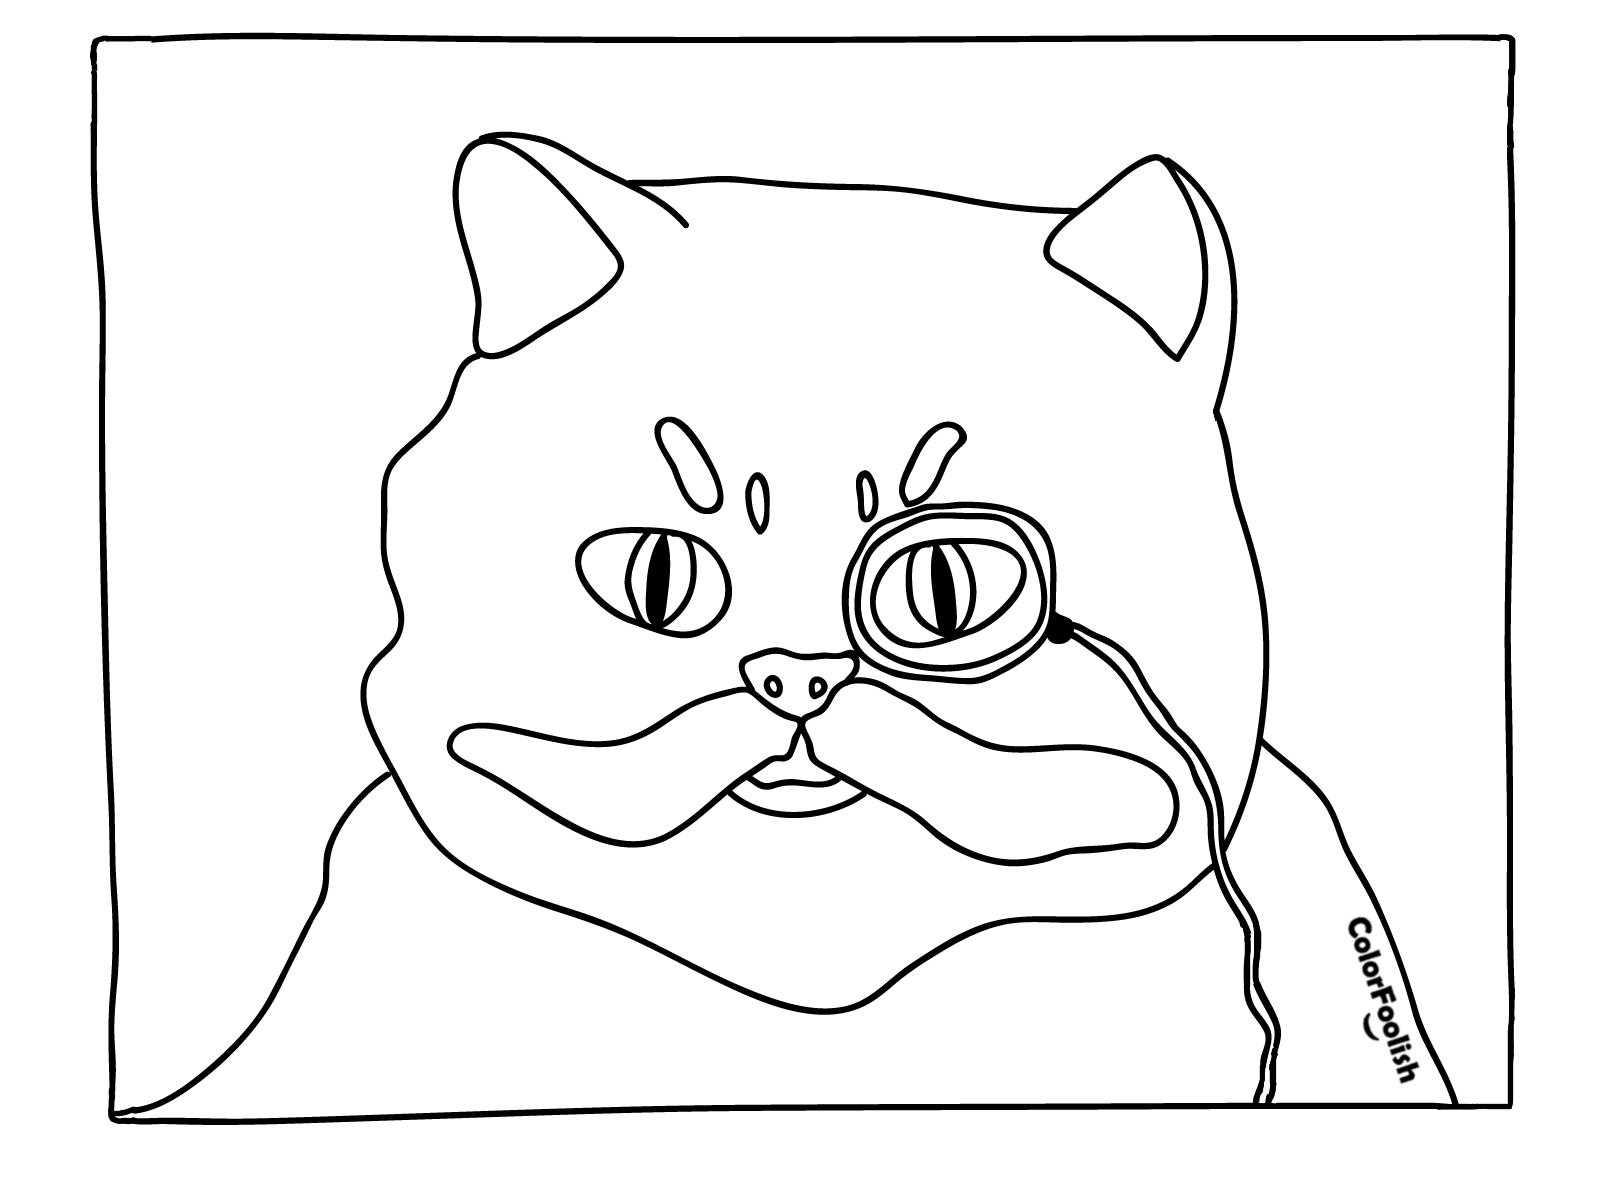 Χρωστικές σελίδες μιας ωραίας γάτας με ένα μονοκλωνικό